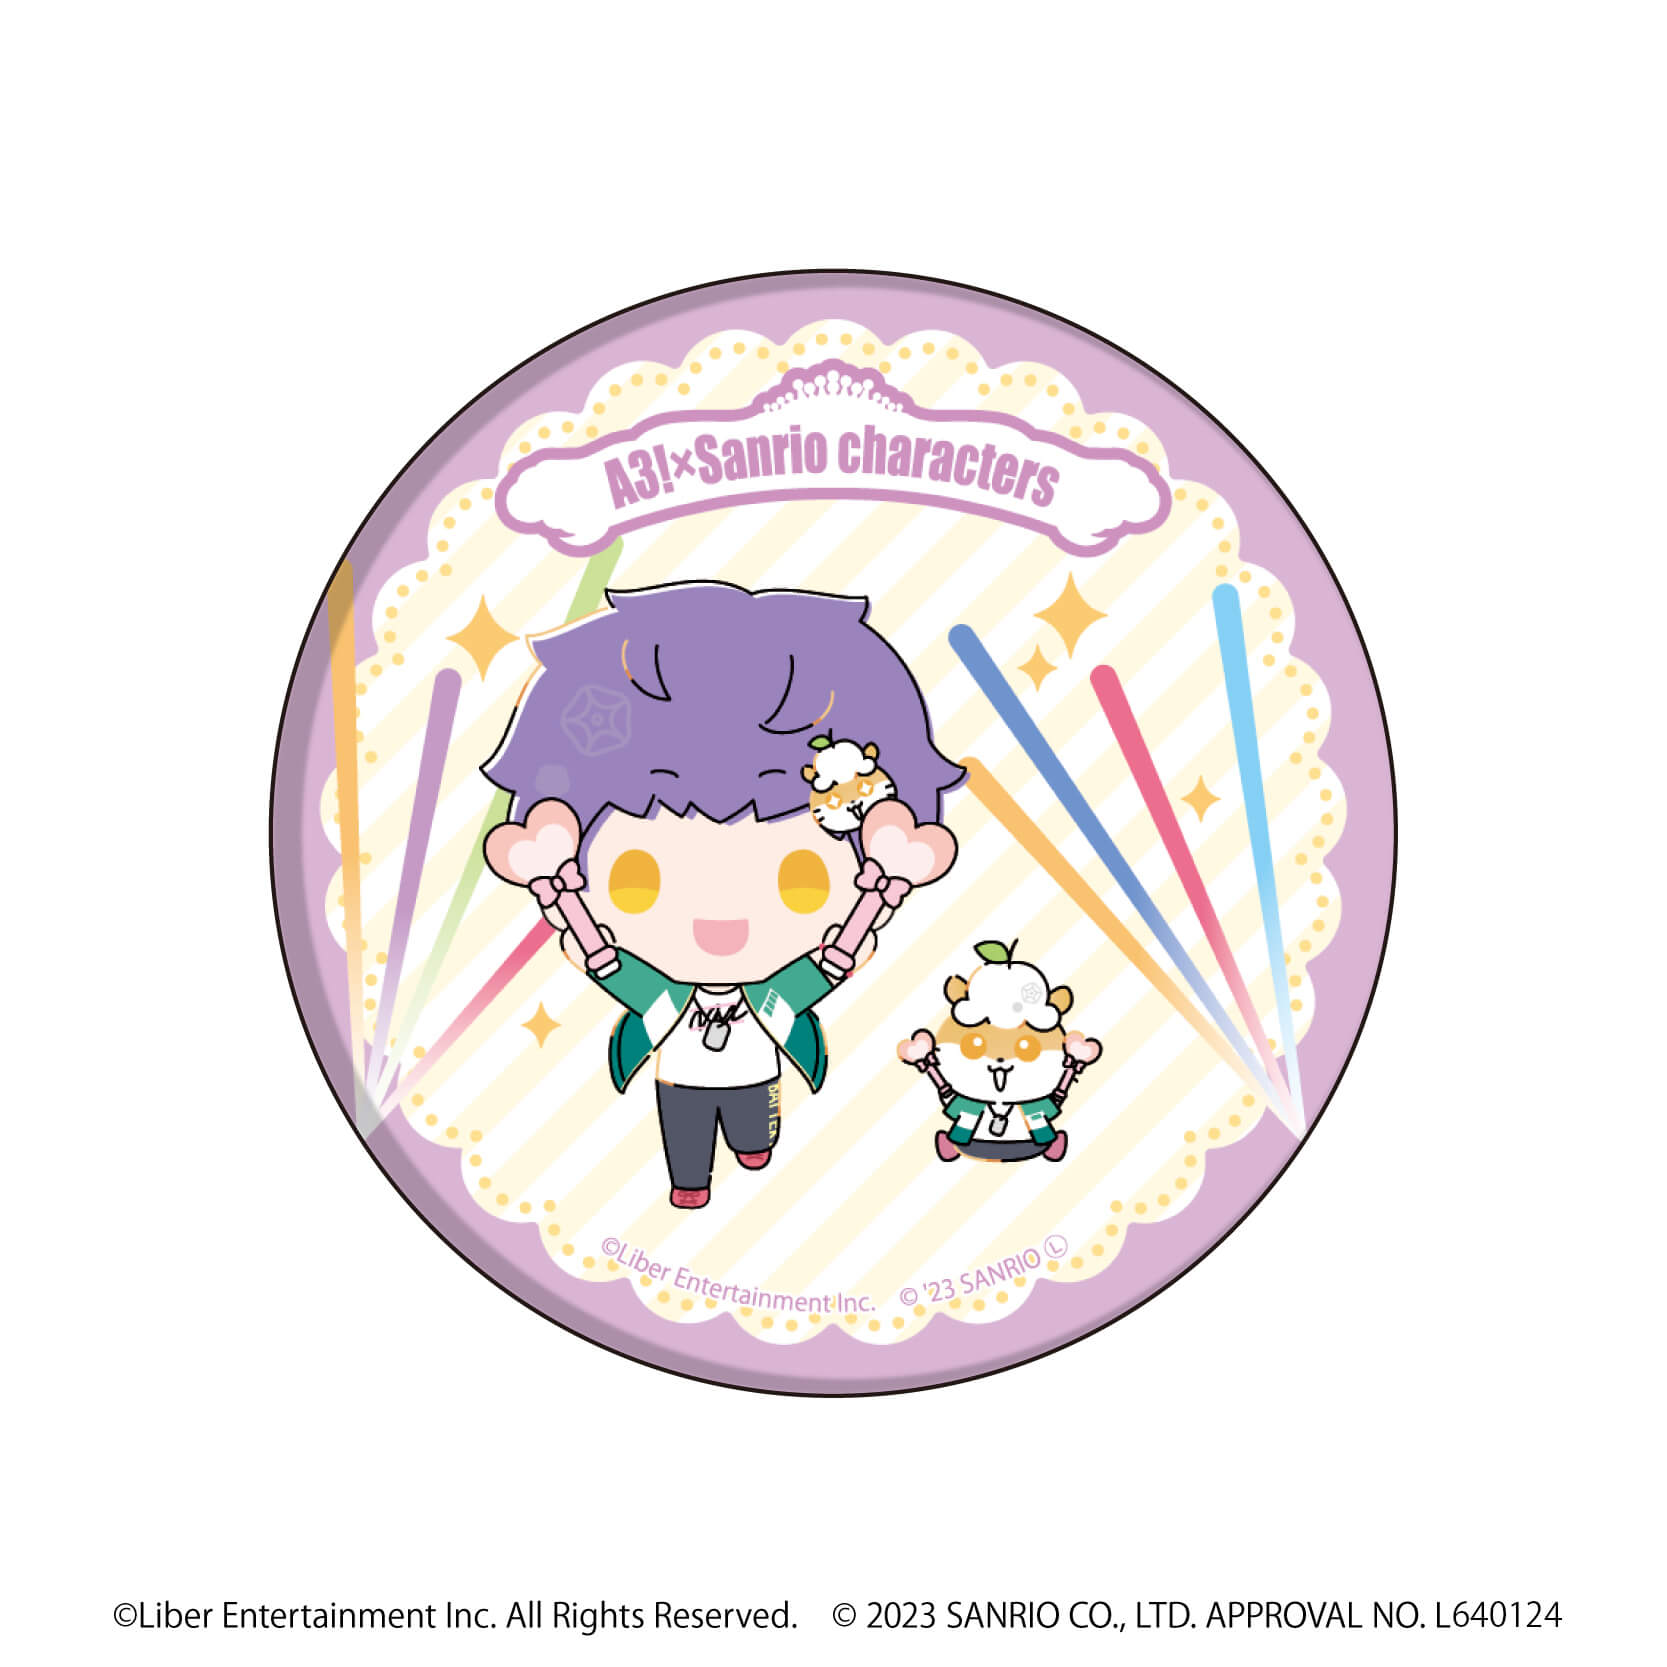 缶バッジ「A3!×Sanrio characters」03/S＆S ブラインド(12種)